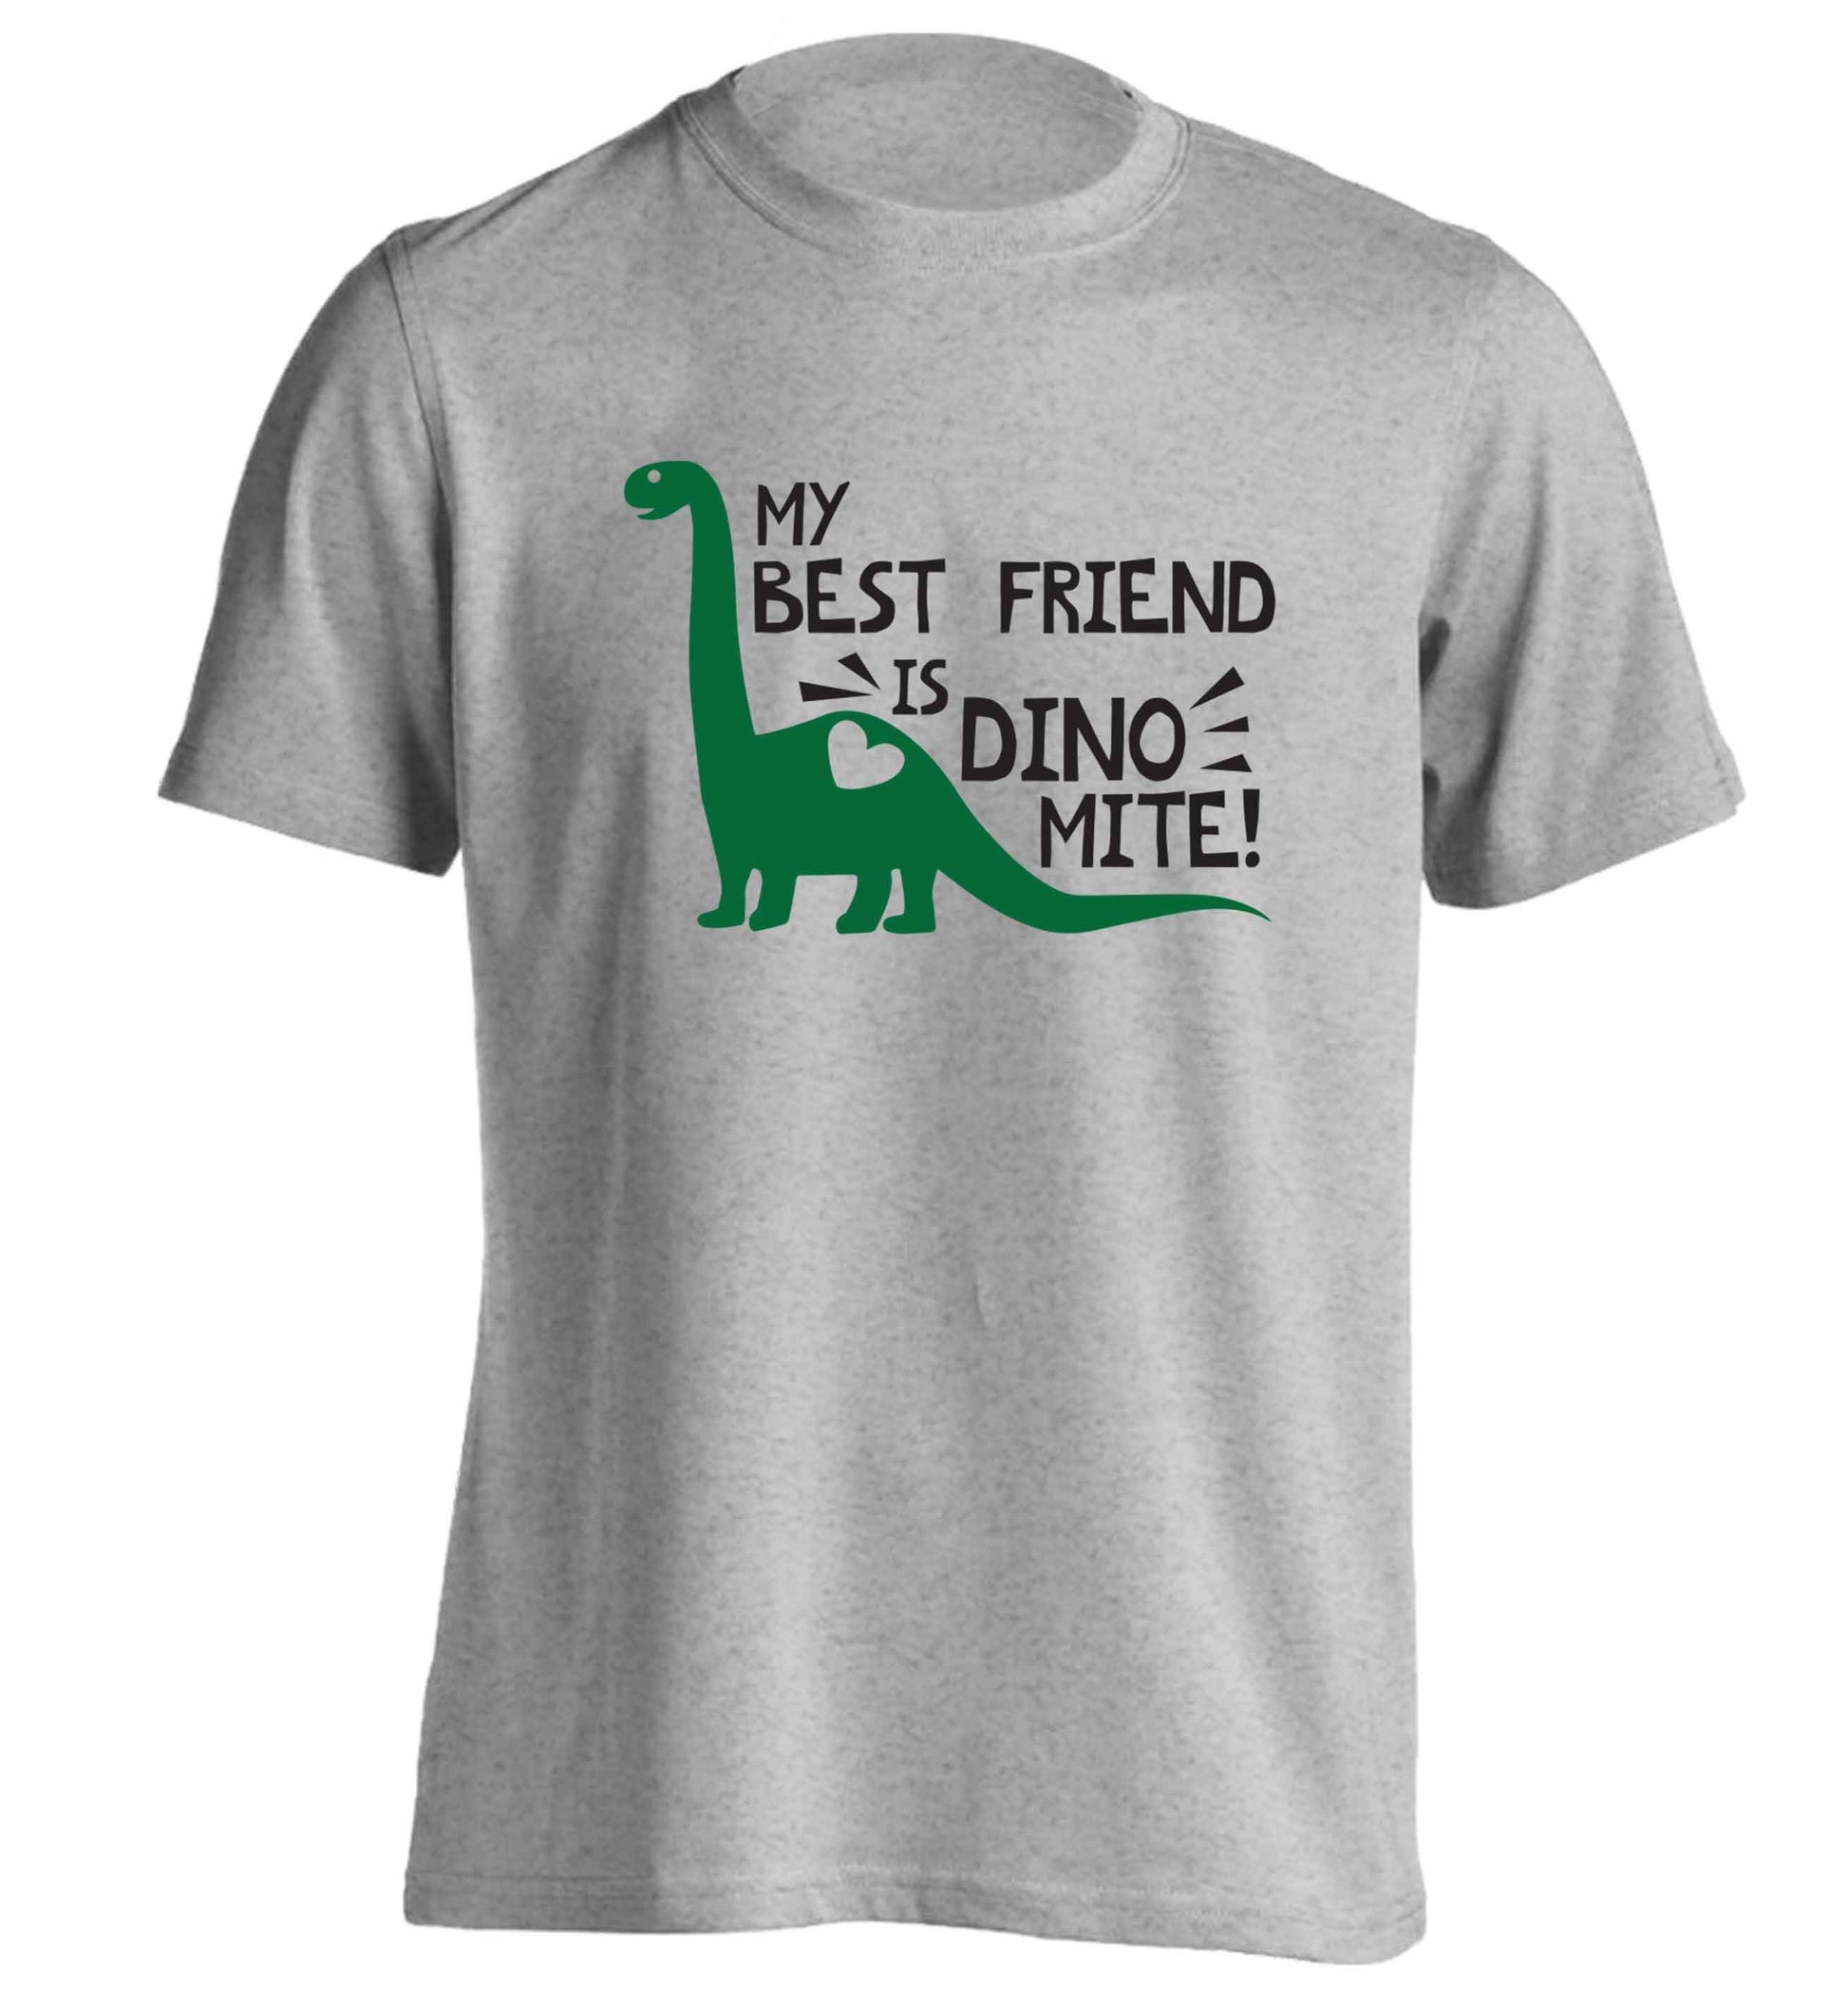 My best friend is dinomite! adults unisex grey Tshirt 2XL